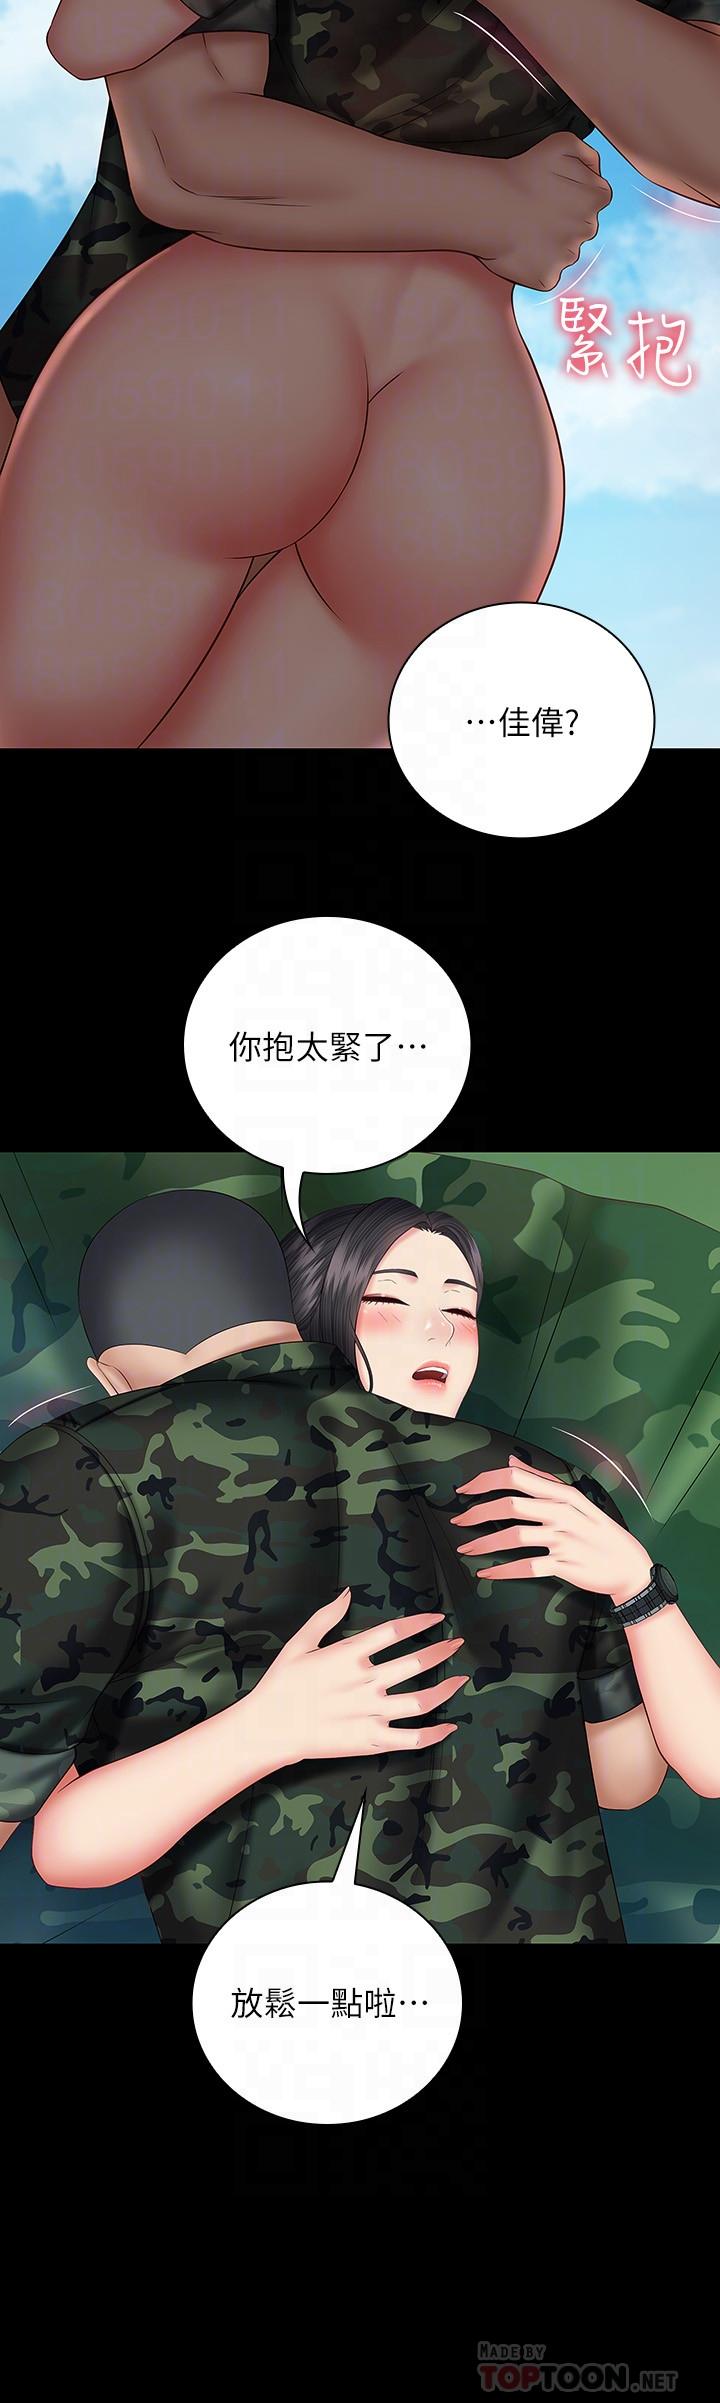 《妹妹的义务》漫画 第48话 - 刘志浩班长可疑的举动